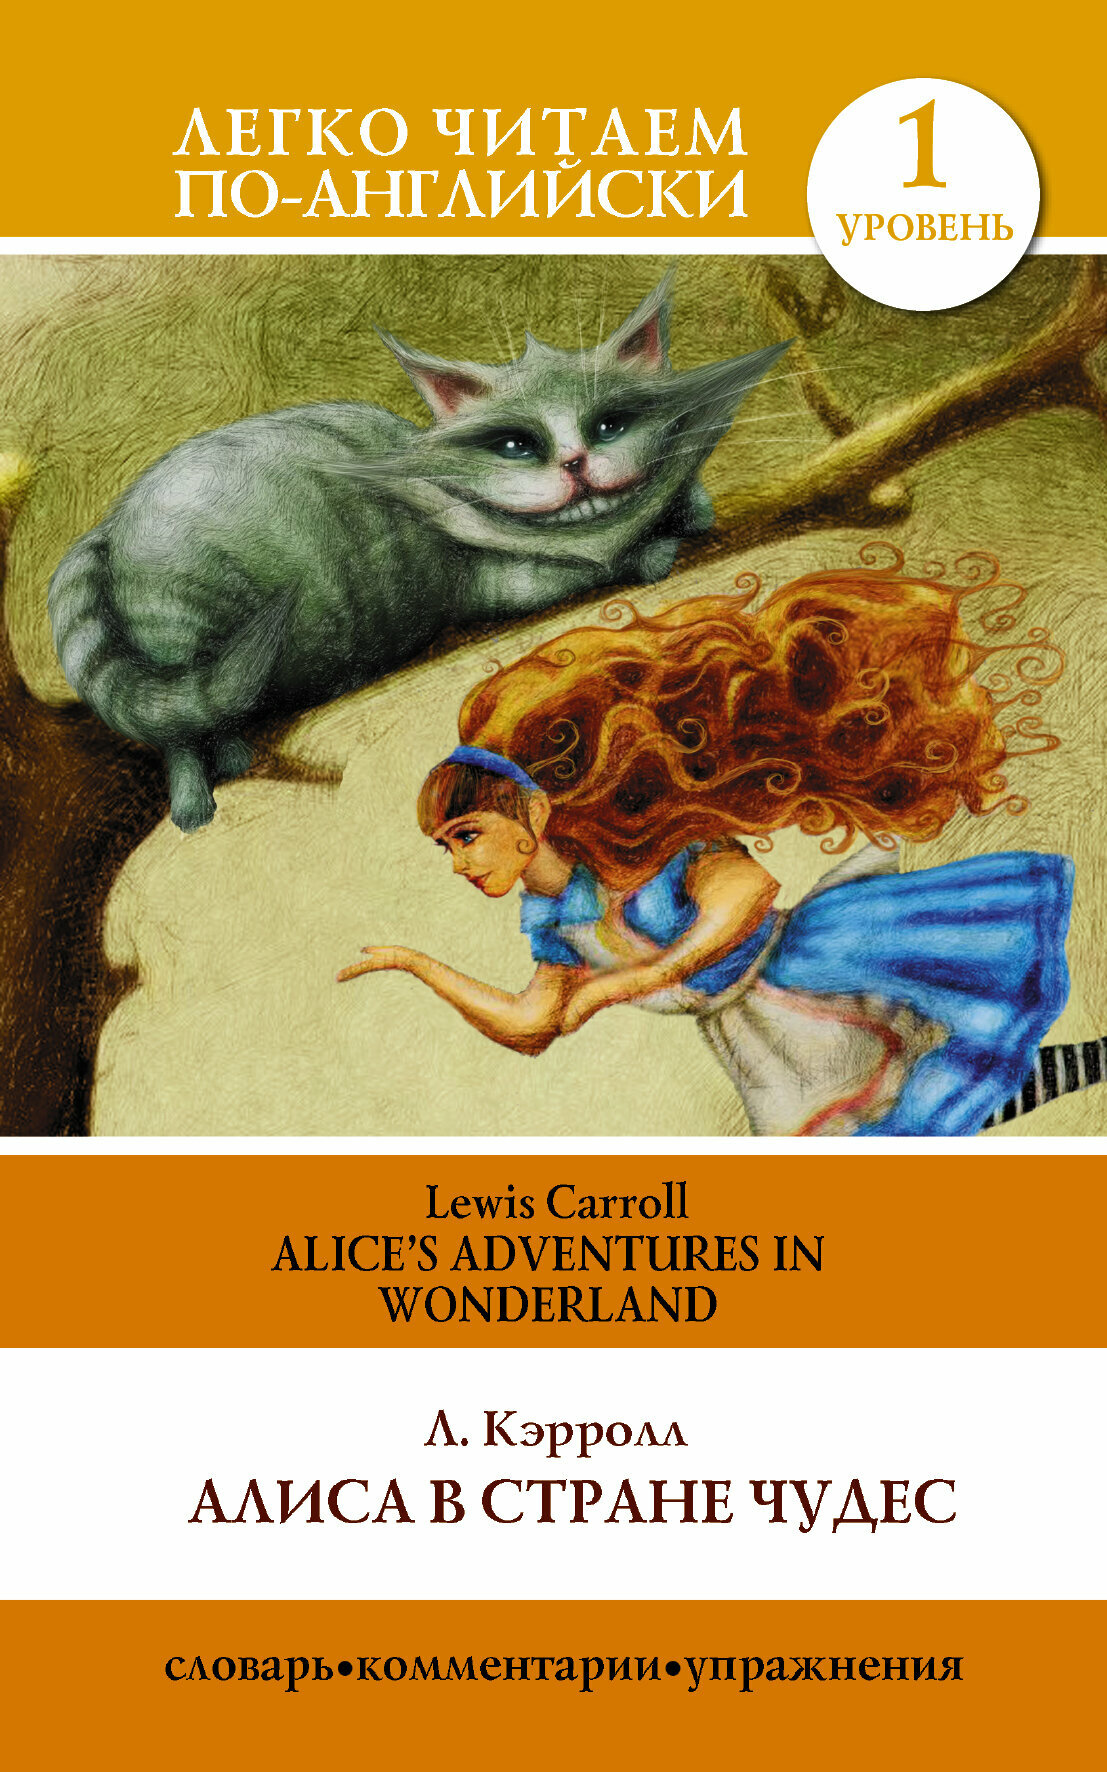 ЛегкоЧитаемПоАнгл(о) Carroll L. Alice's Adventures in Wonderland (Кэрролл Л. Алиса в стране чудес) [уровень 1]